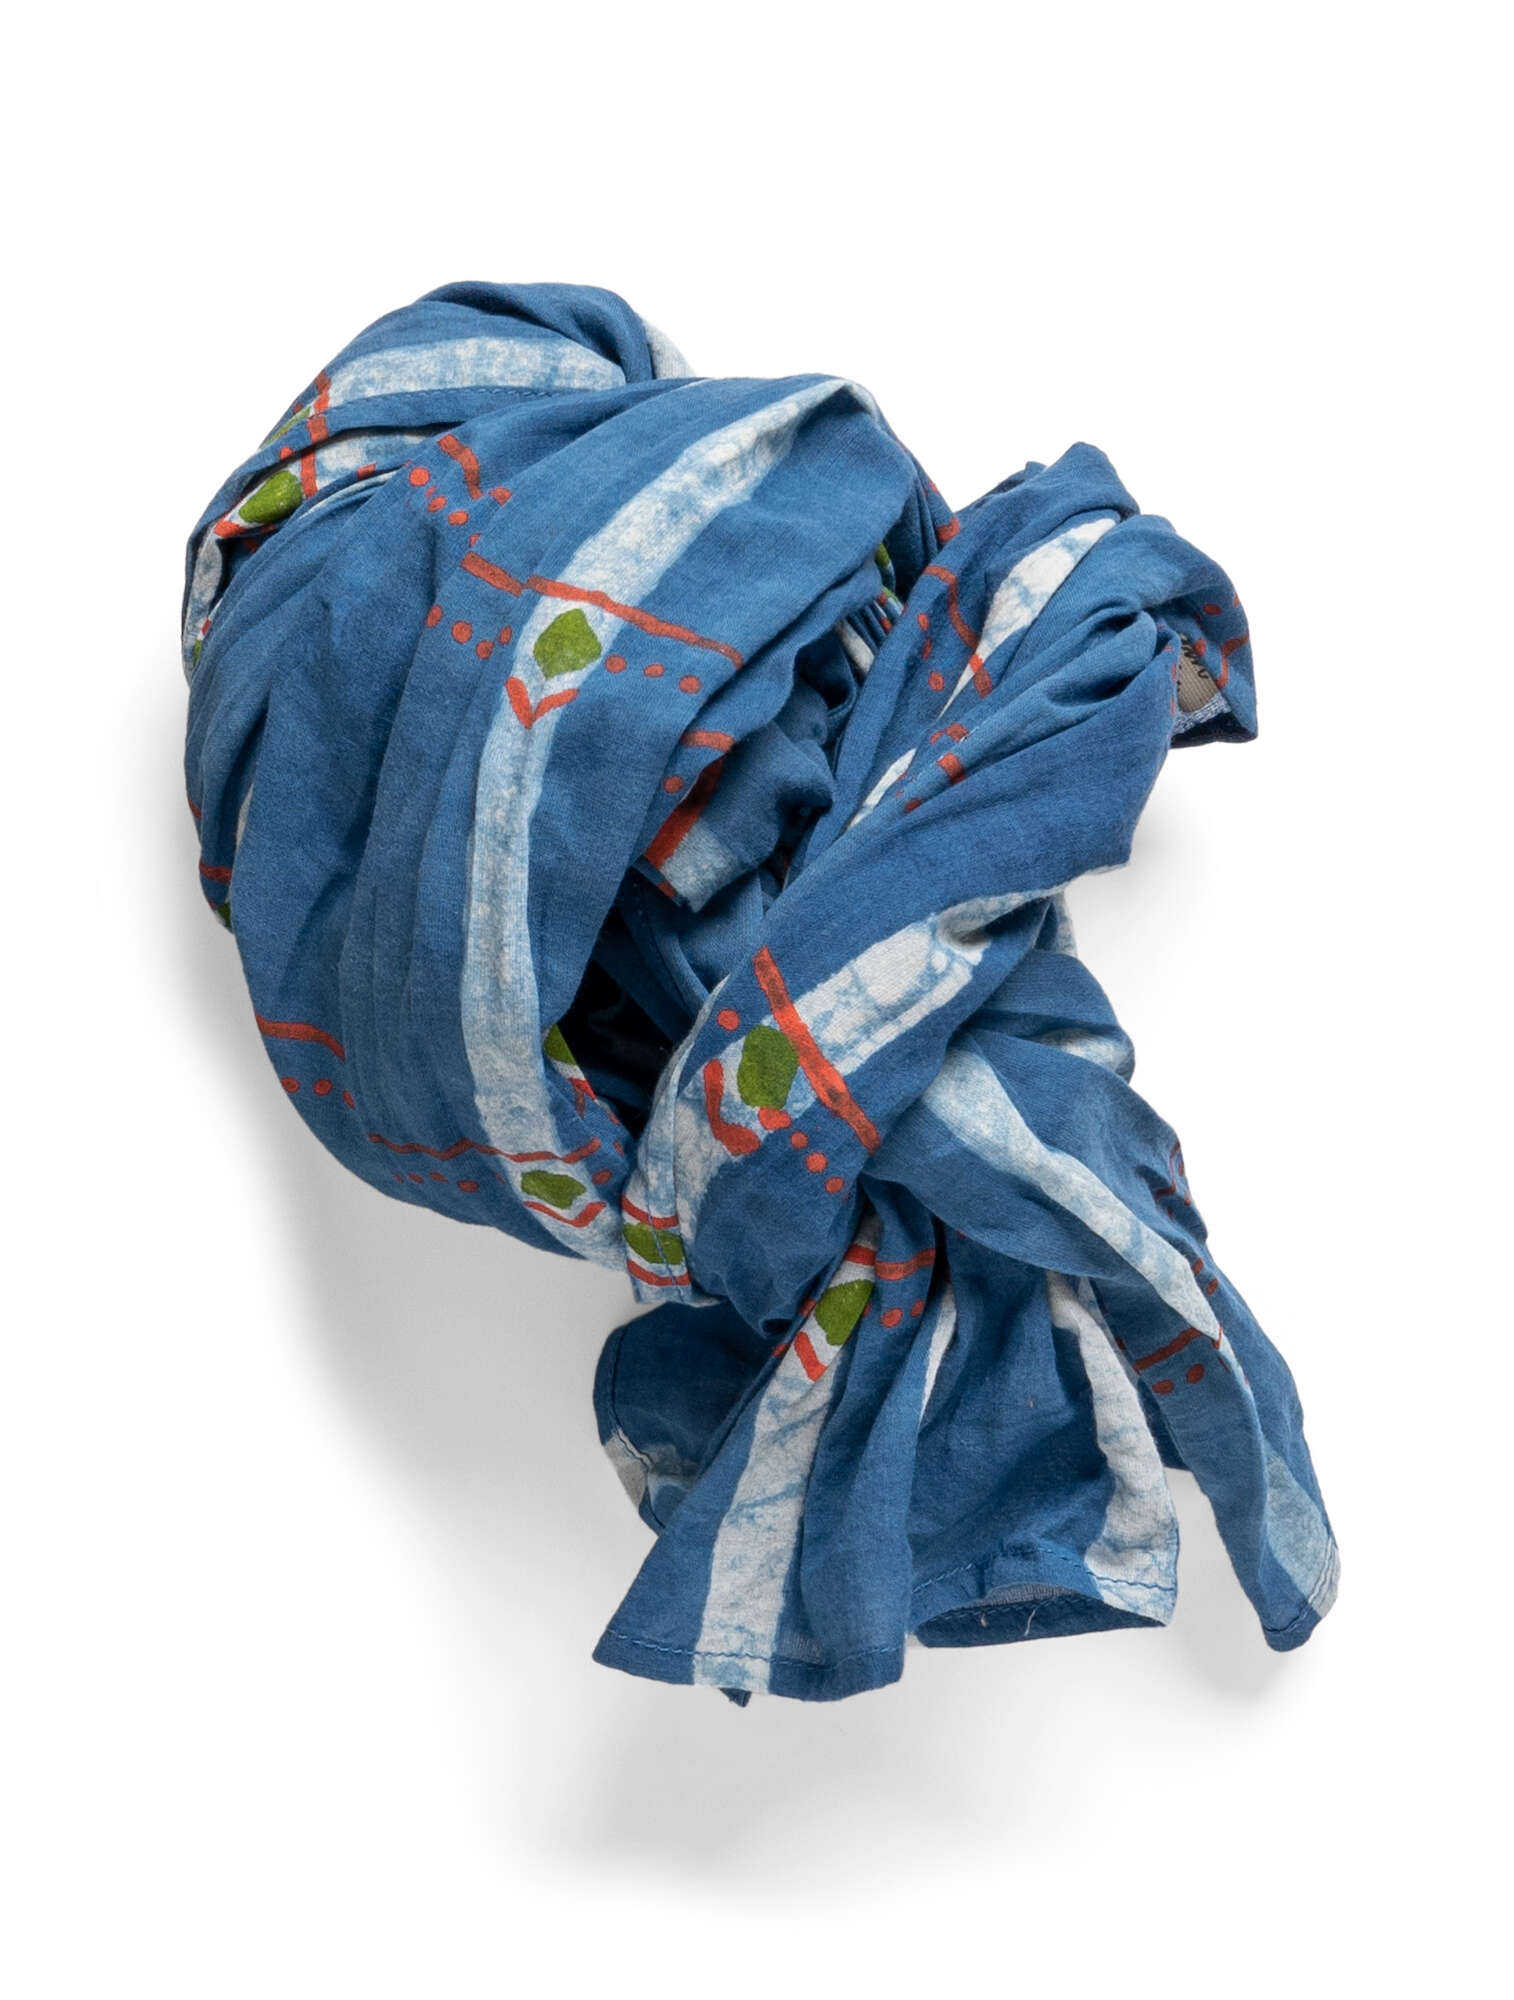 “Indra” shawl in organic cotton indigofera